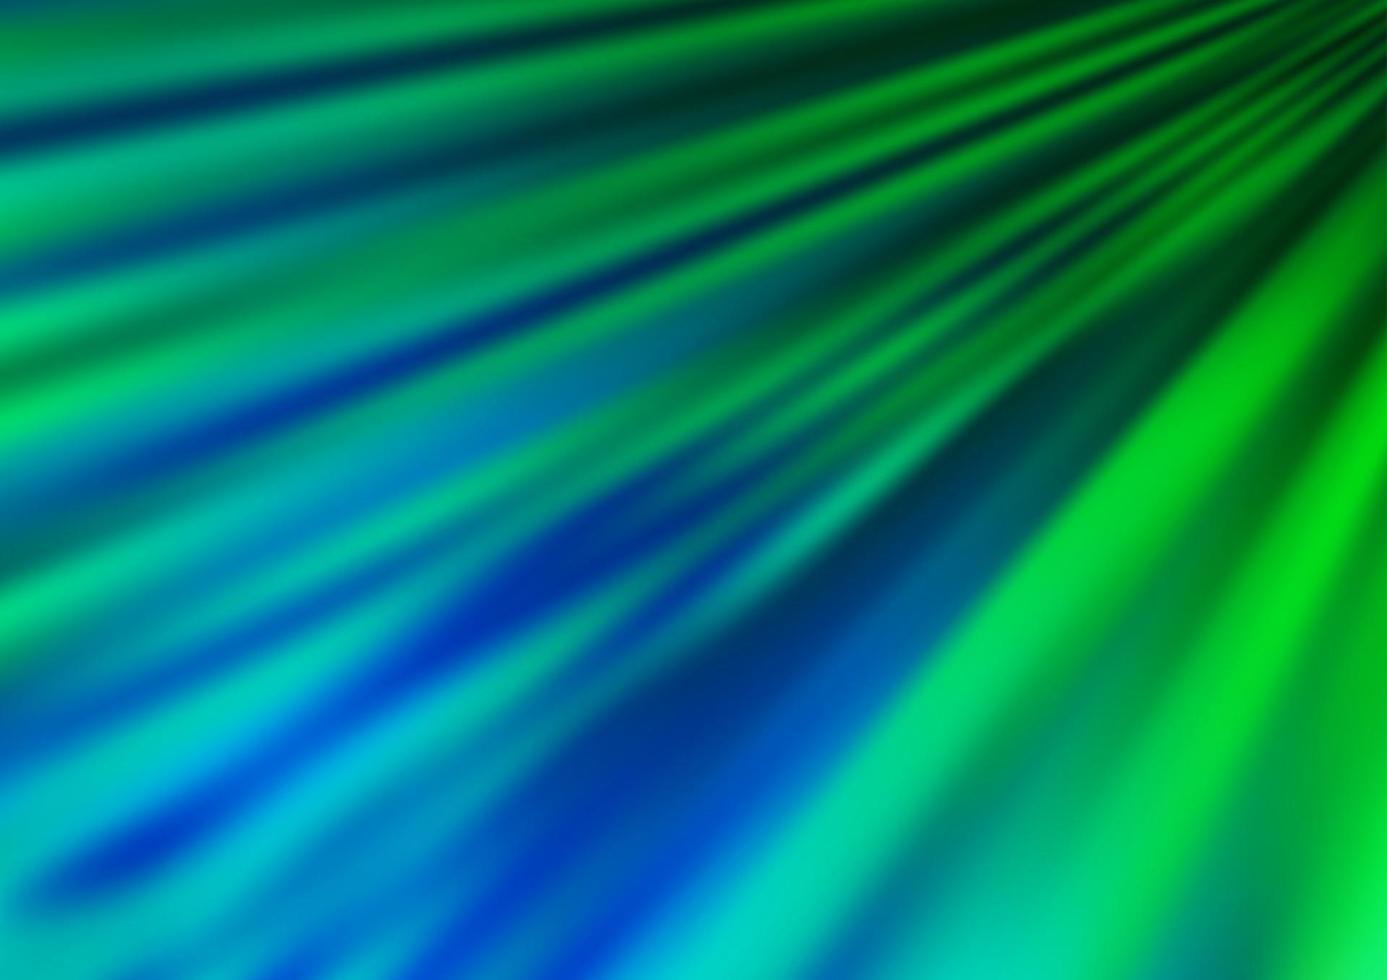 hellblaue, grüne Vektortextur mit farbigen Linien. vektor